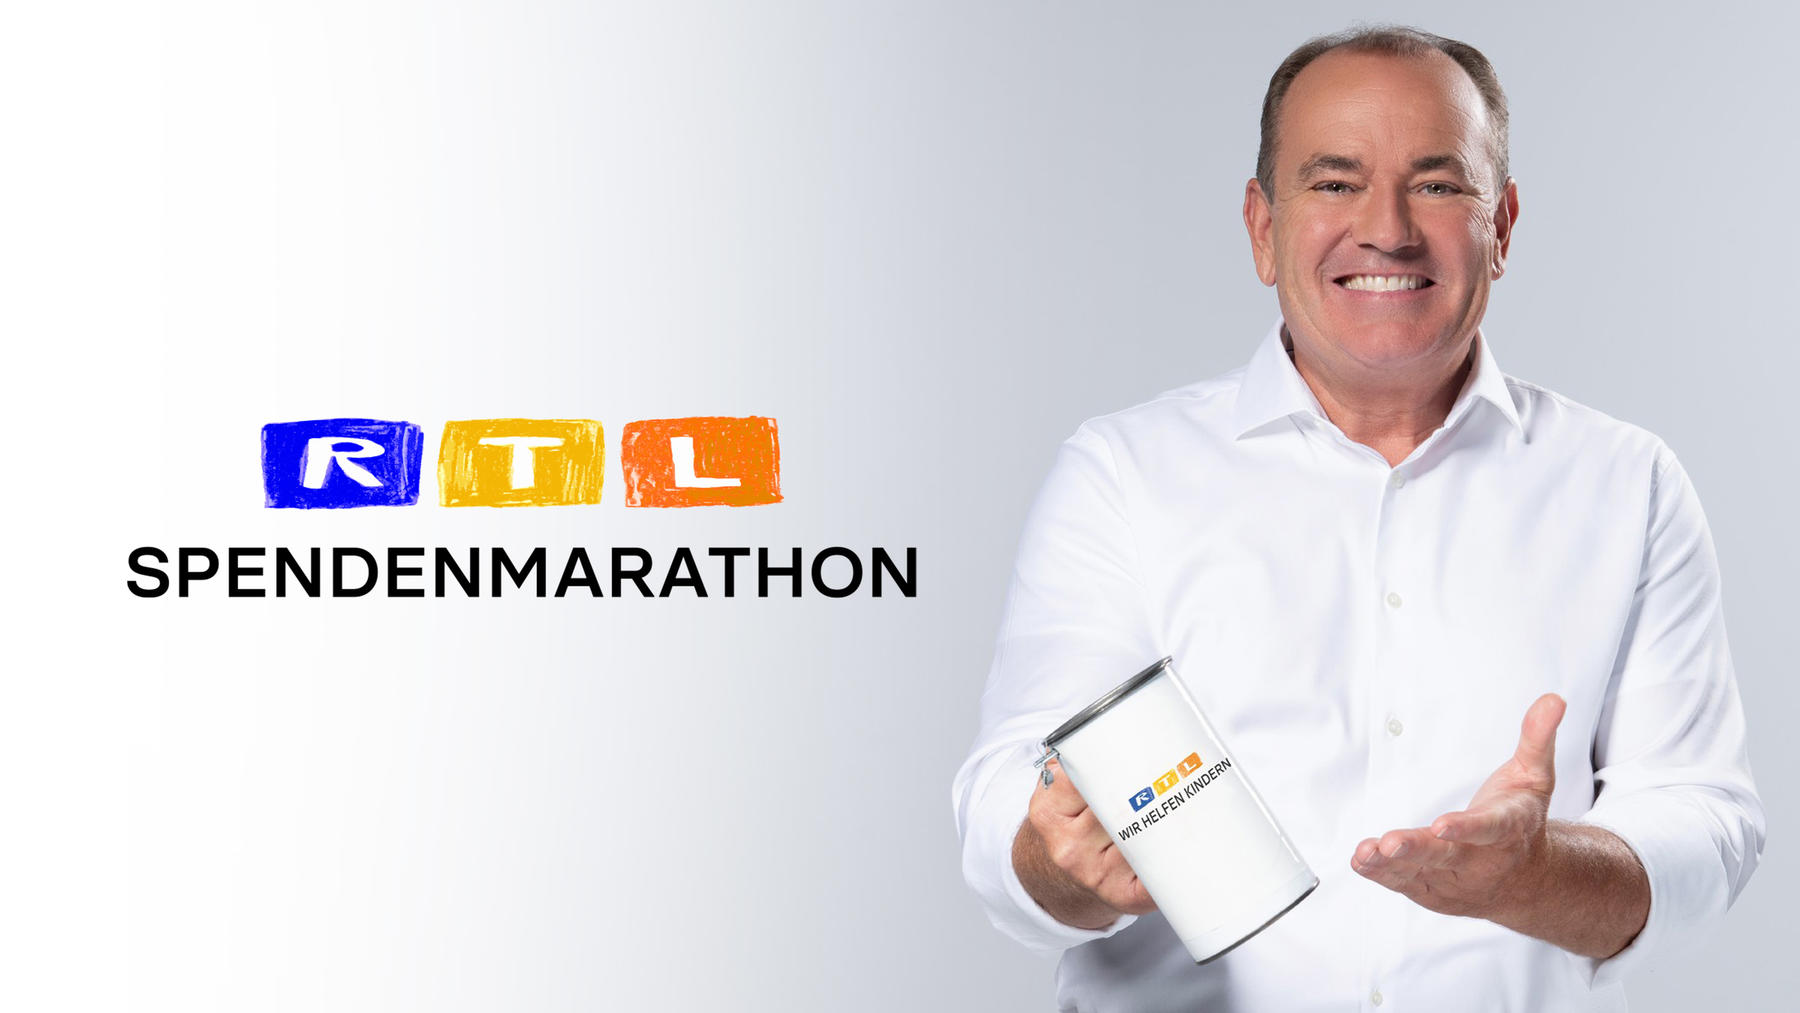 RTL Spendenmarathon